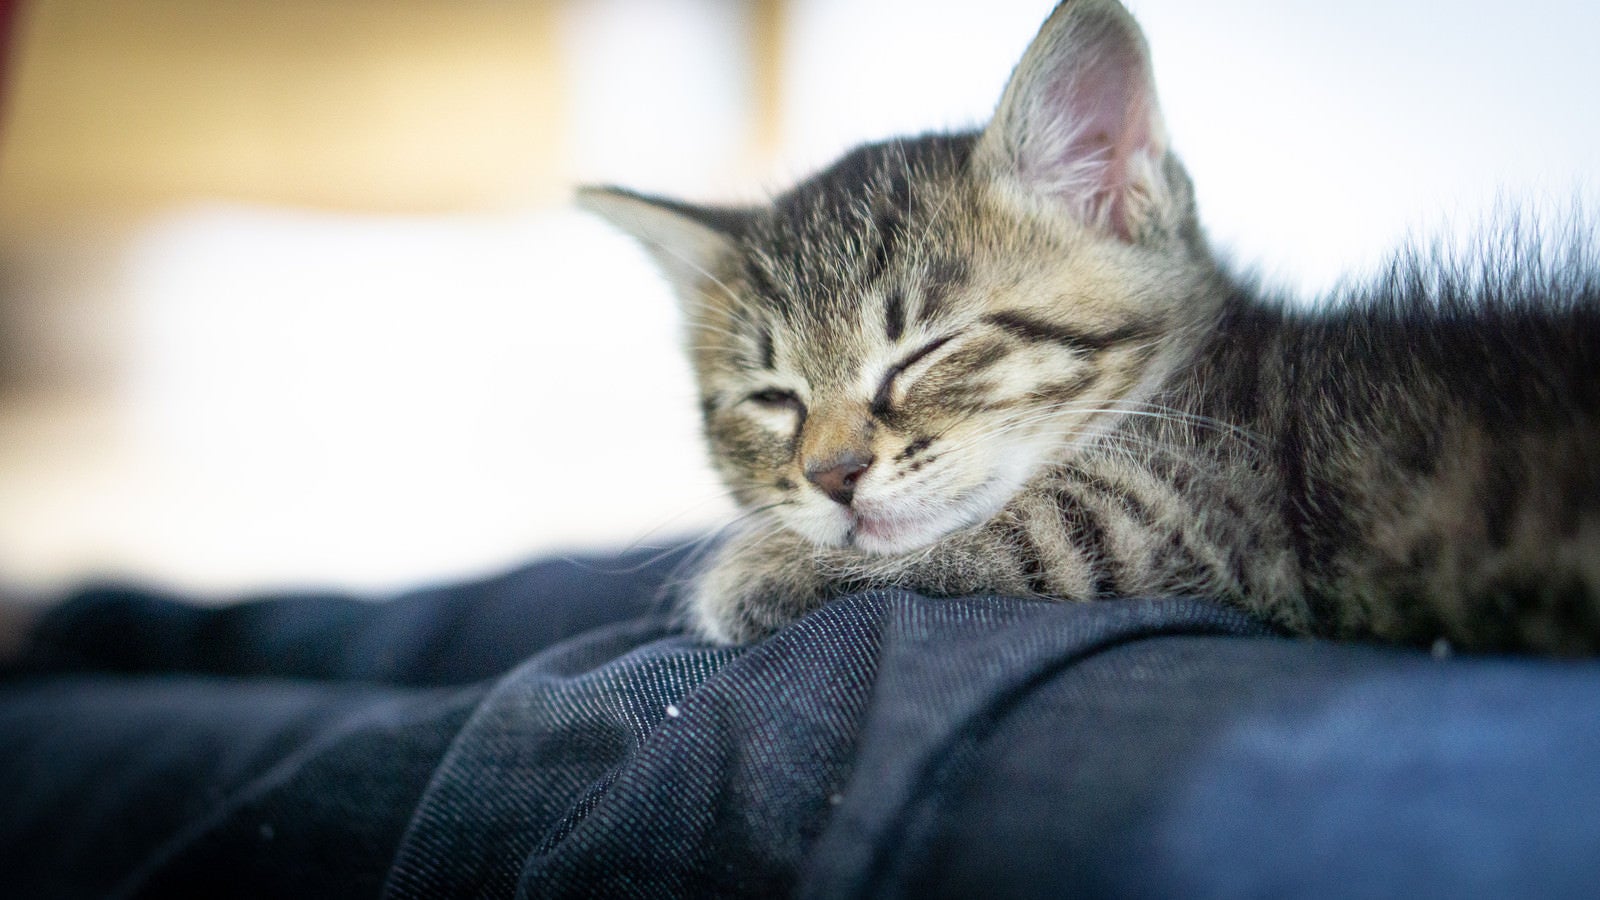 「ソファーで寝落ちする子猫ちゃん」の写真